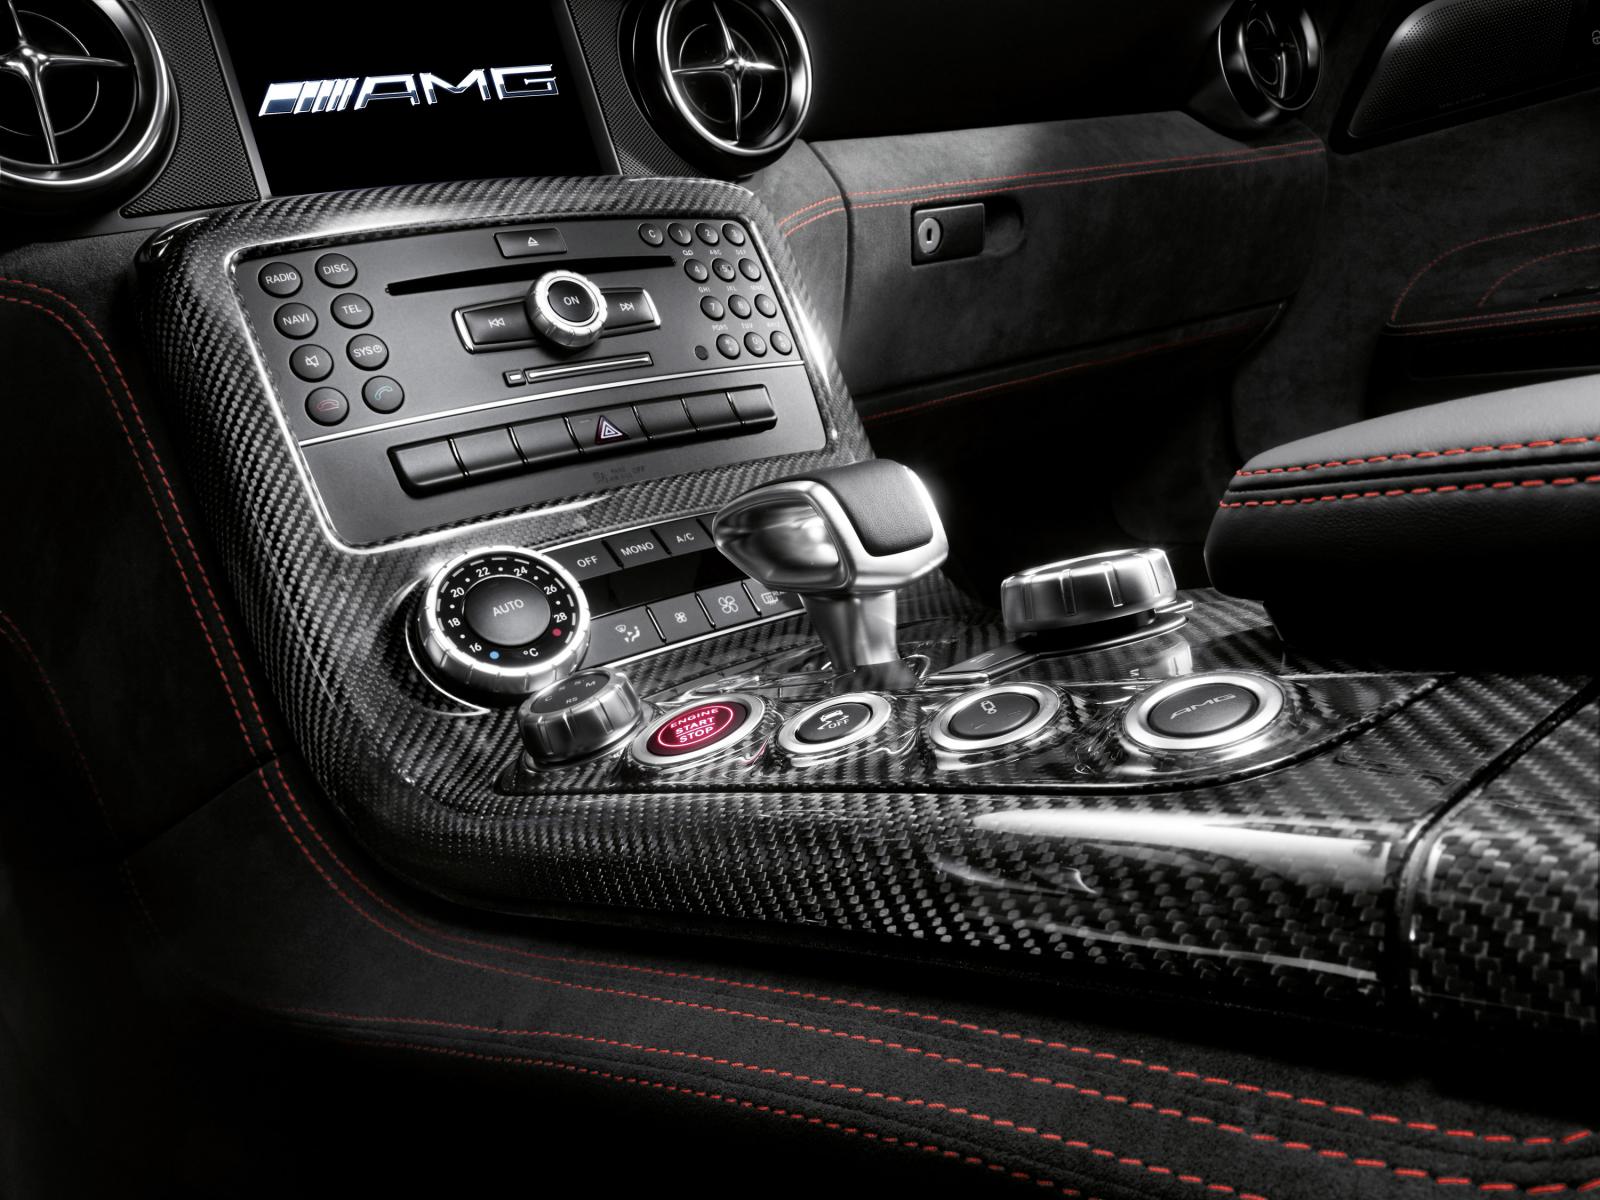 2013 Mercedes-Benz SLS AMG Black Series